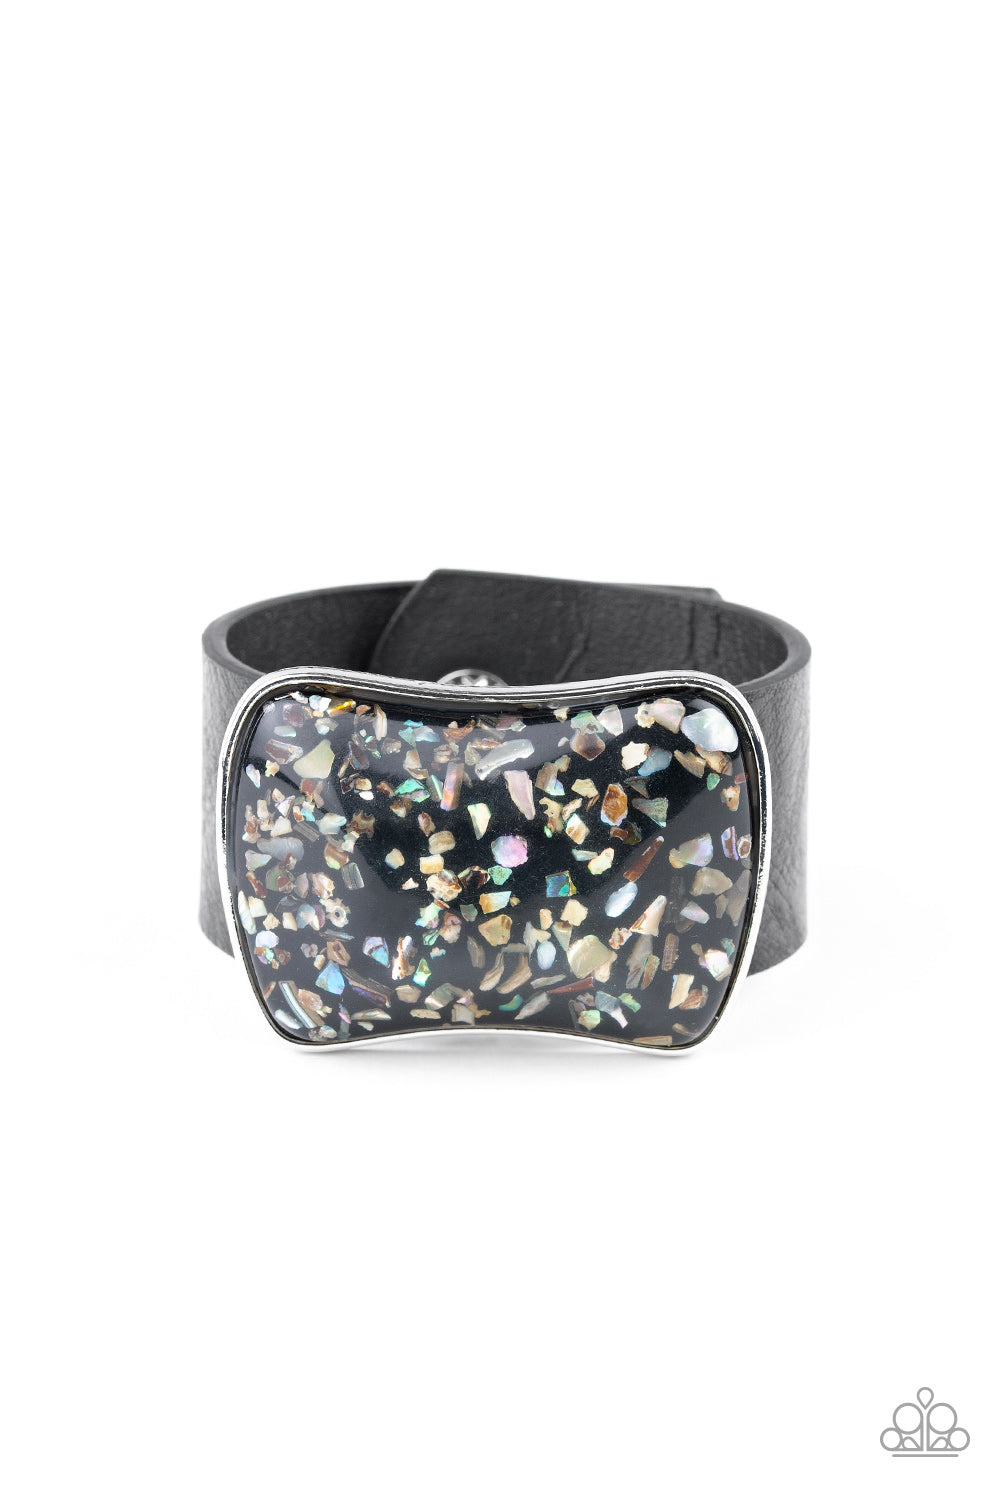 Twinkle Twinkle Little ROCK STAR - Black Iridescent Bracelet Paparazzi Accessories Urban Bracelet